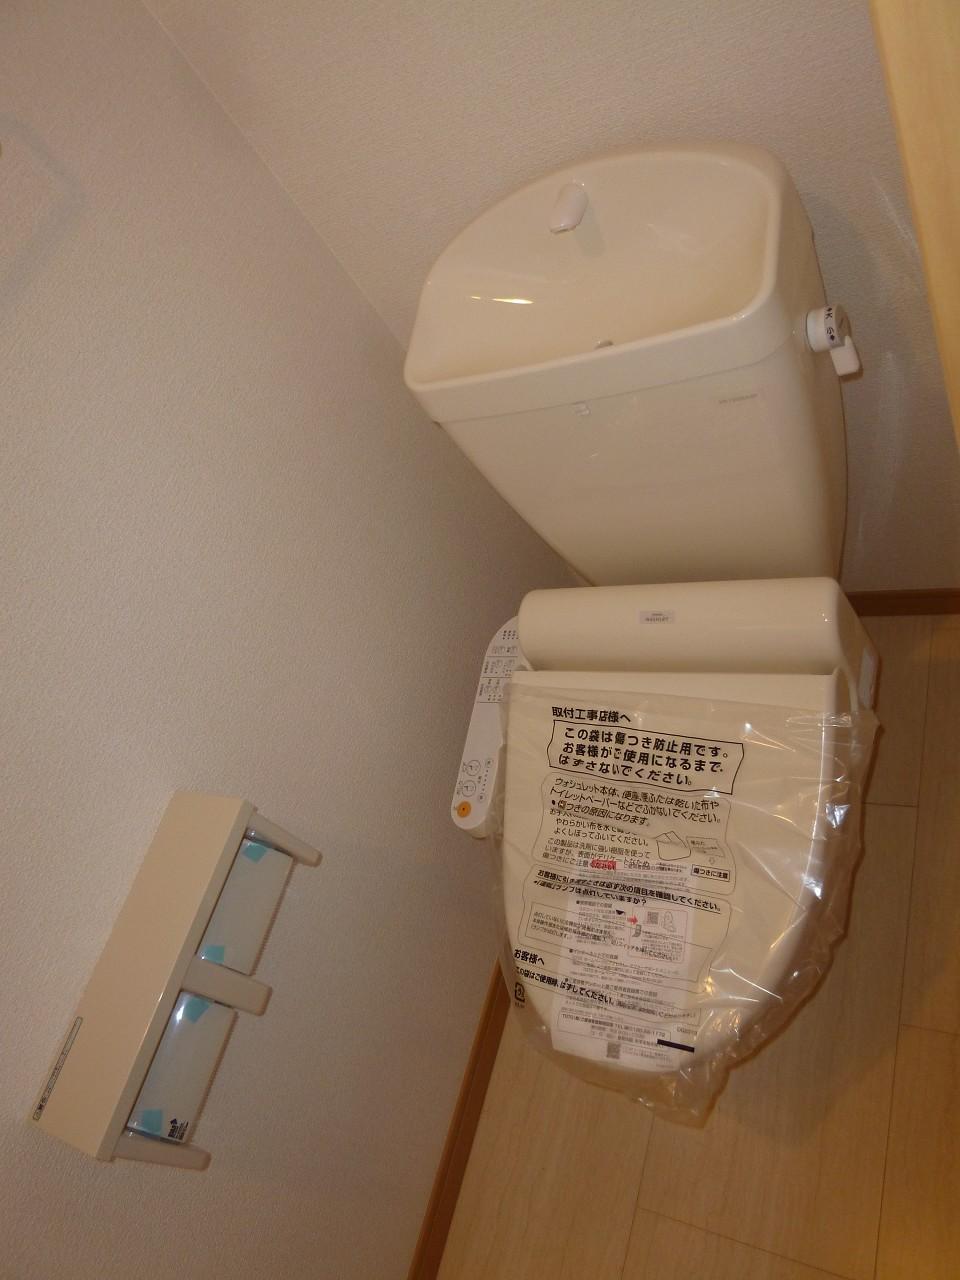 Toilet.  ◆ Washlet with ◆ 